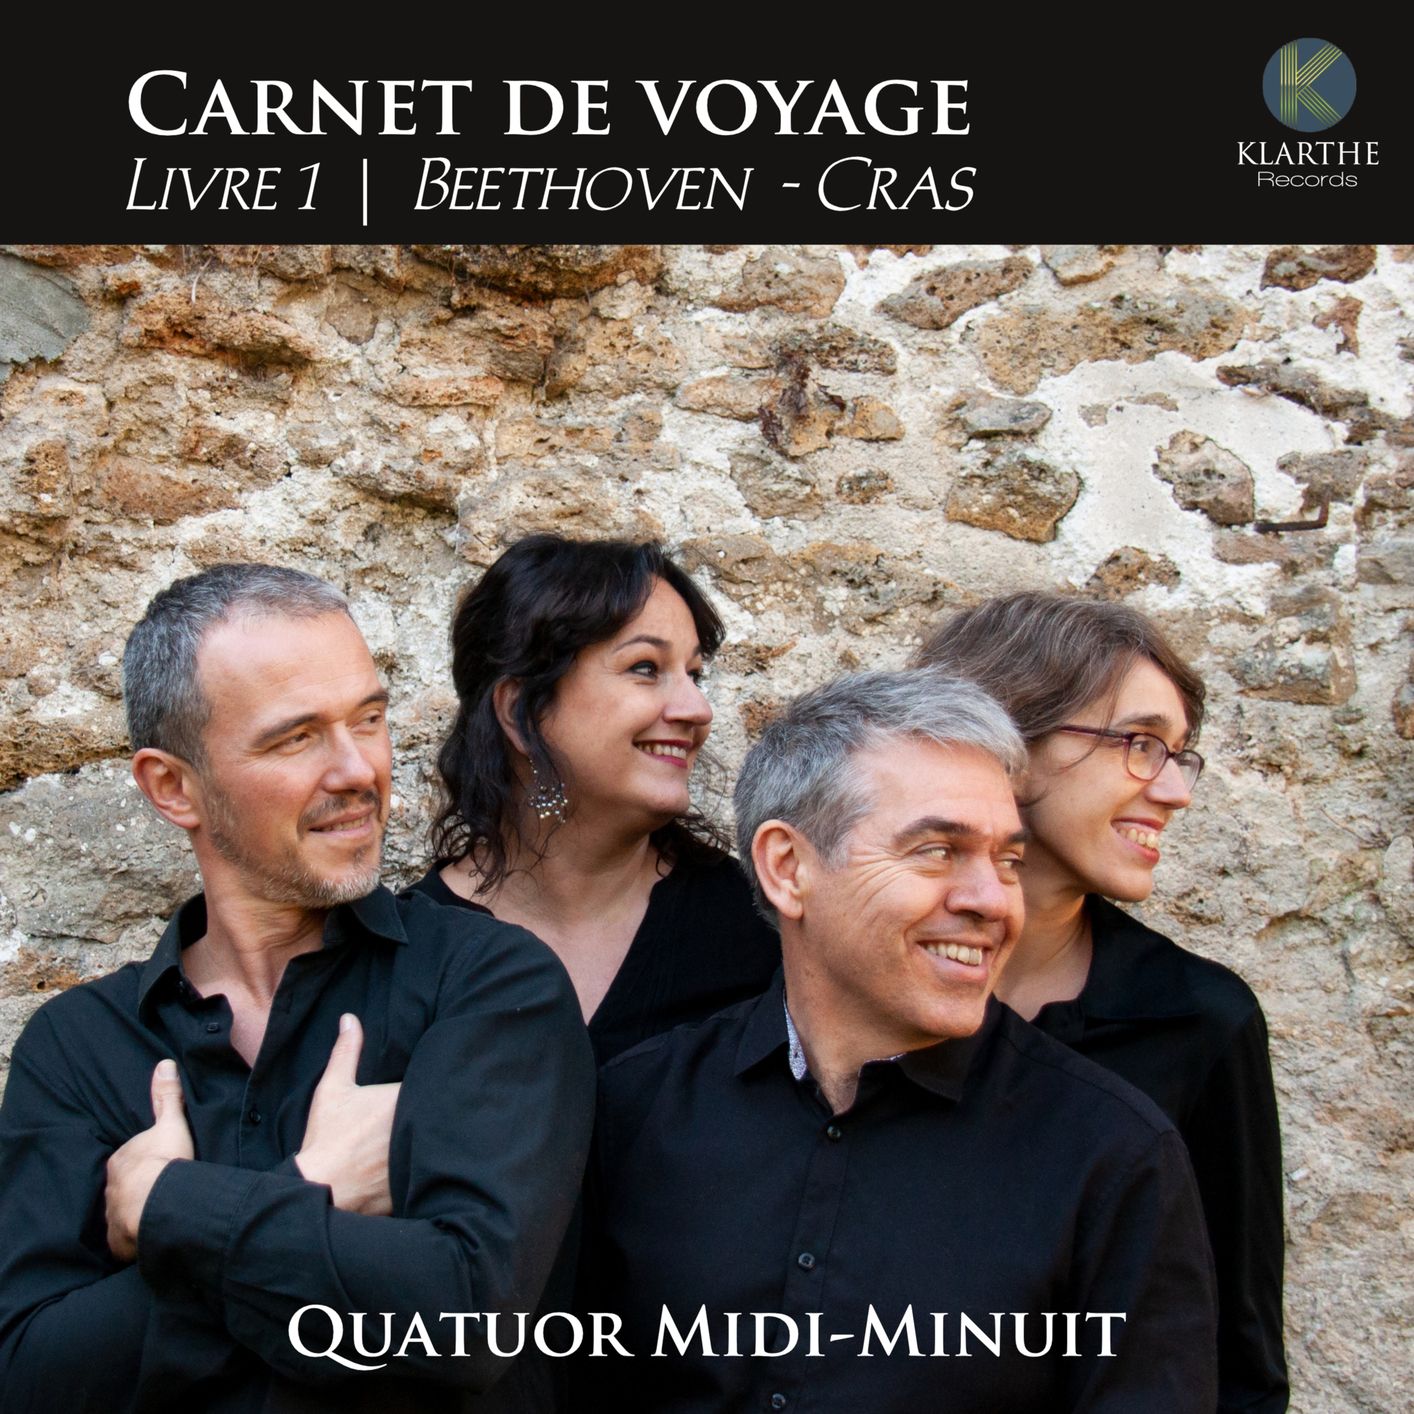 Quatuor Midi-Minuit – Carnet de voyage, Livre 1, Beethoven & Cras (2019) [FLAC 24bit/88,2kHz]